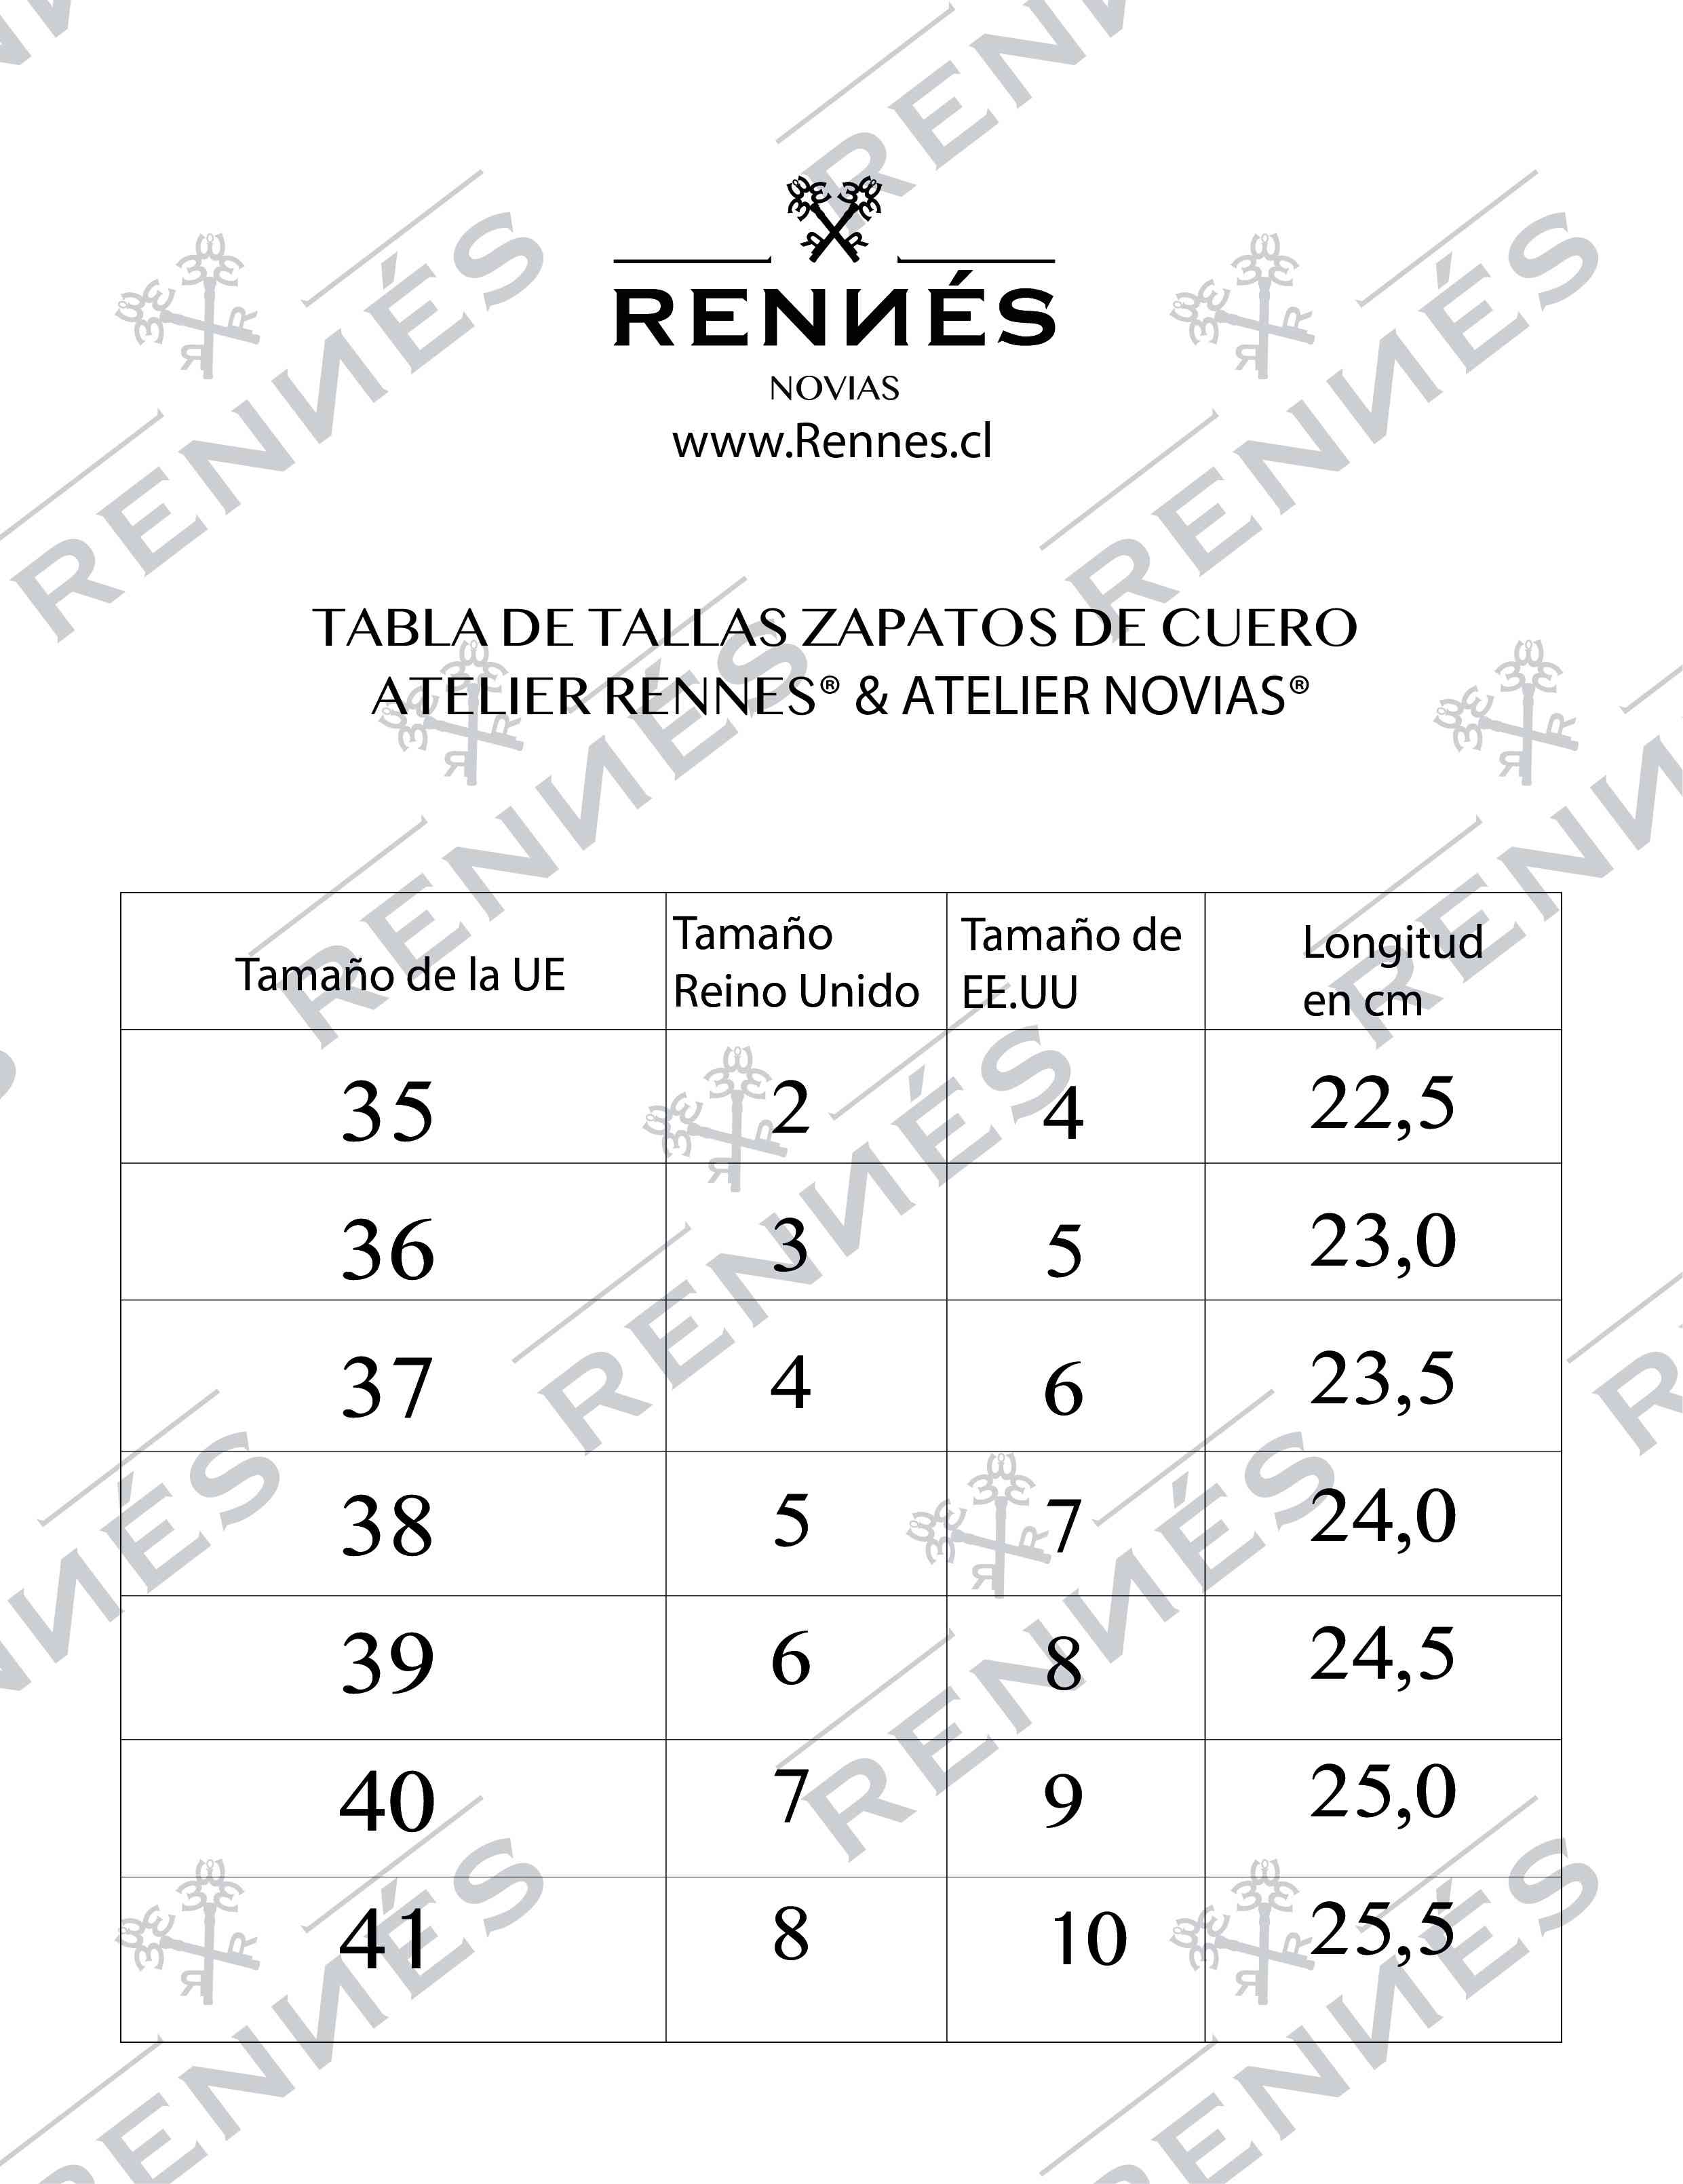 TABLA DE TALLAS ZAPATOS RENNES ATELIER® & RENNES NOVIAS®